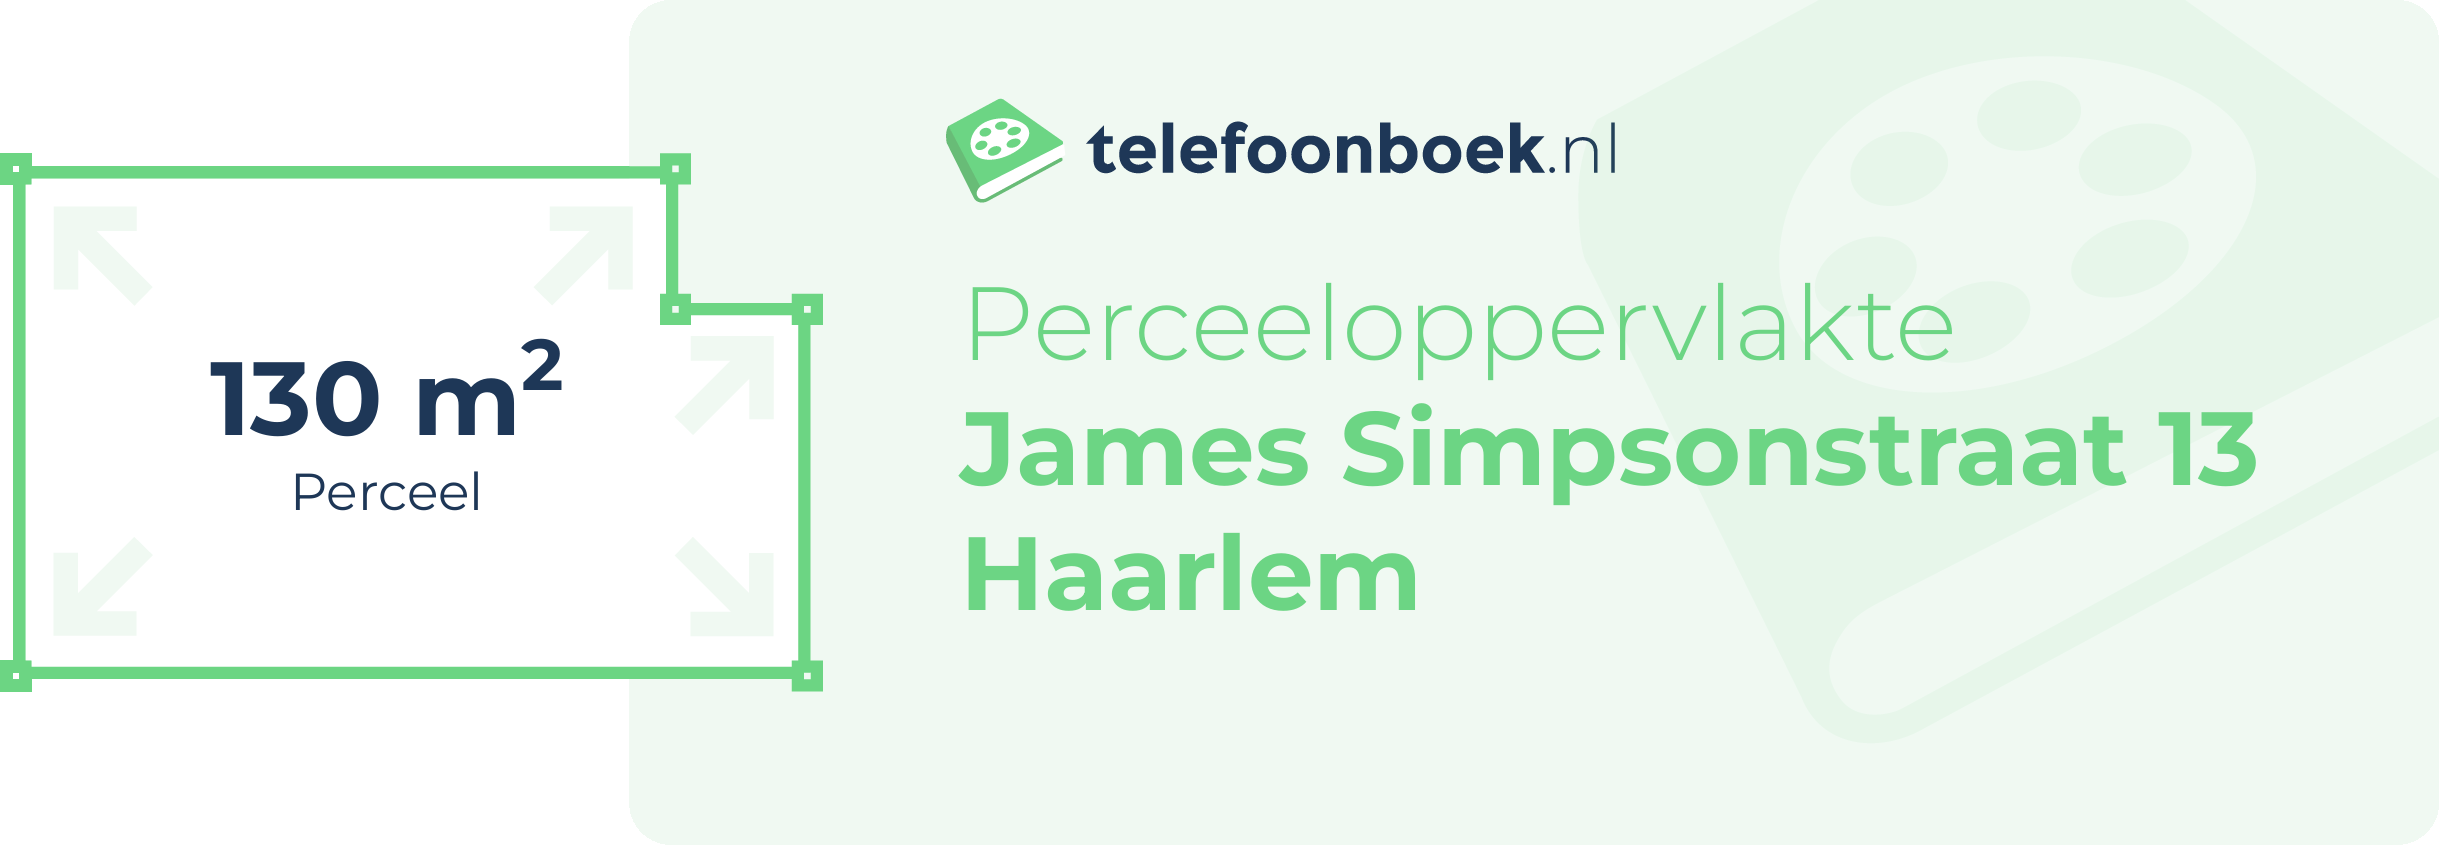 Perceeloppervlakte James Simpsonstraat 13 Haarlem